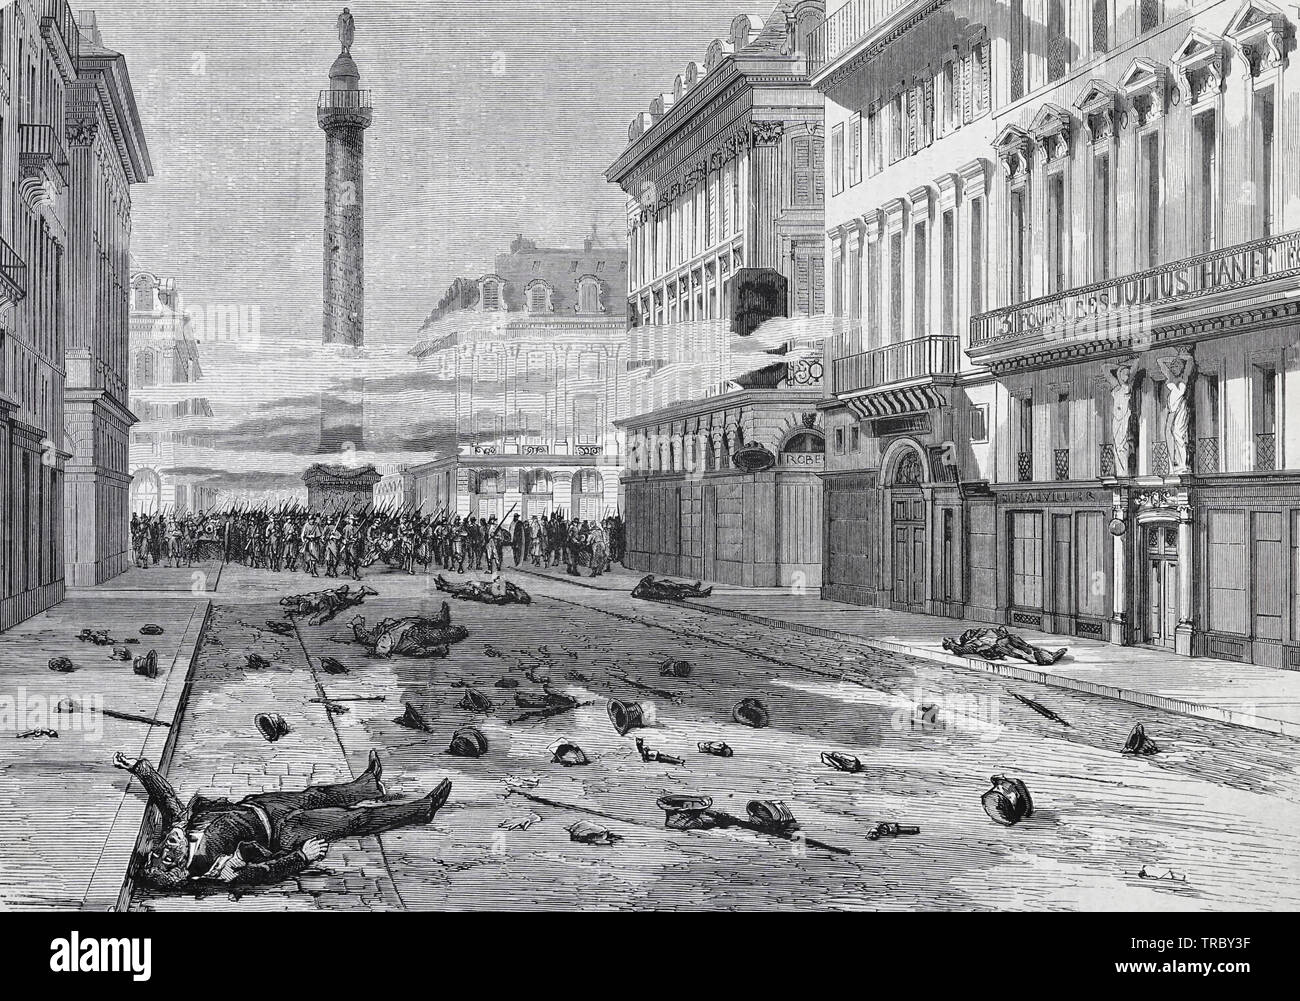 Die Erschießung von Vendome Platz - Aussehen der Straße des Friedens, nach der Zerstreuung der Demonstration von März 23 - Pariser Kommune, 1871 Stockfoto